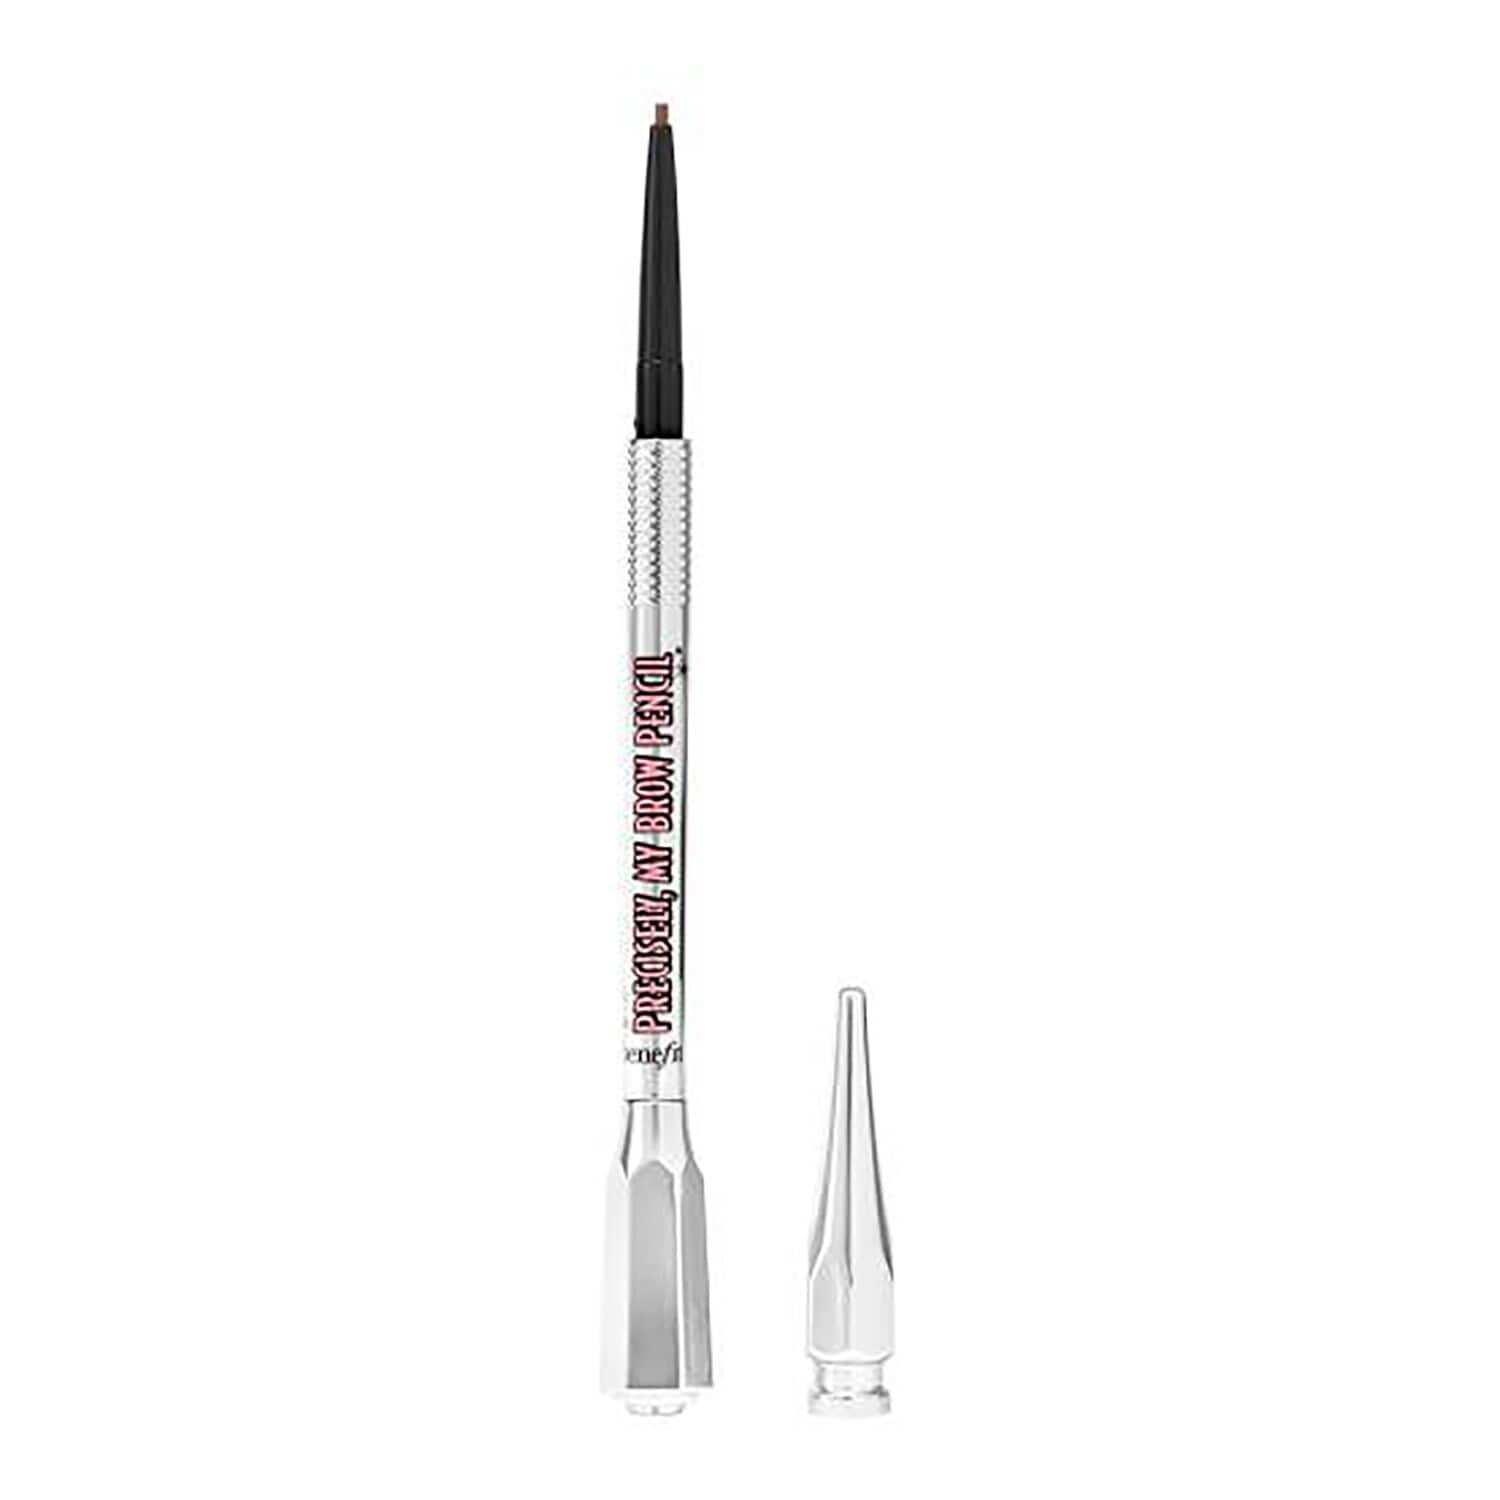 Precisely, My Brow Pencil   La´piz de Cejas Ultrapreciso de Benefit Cosmetics 32,99 euros